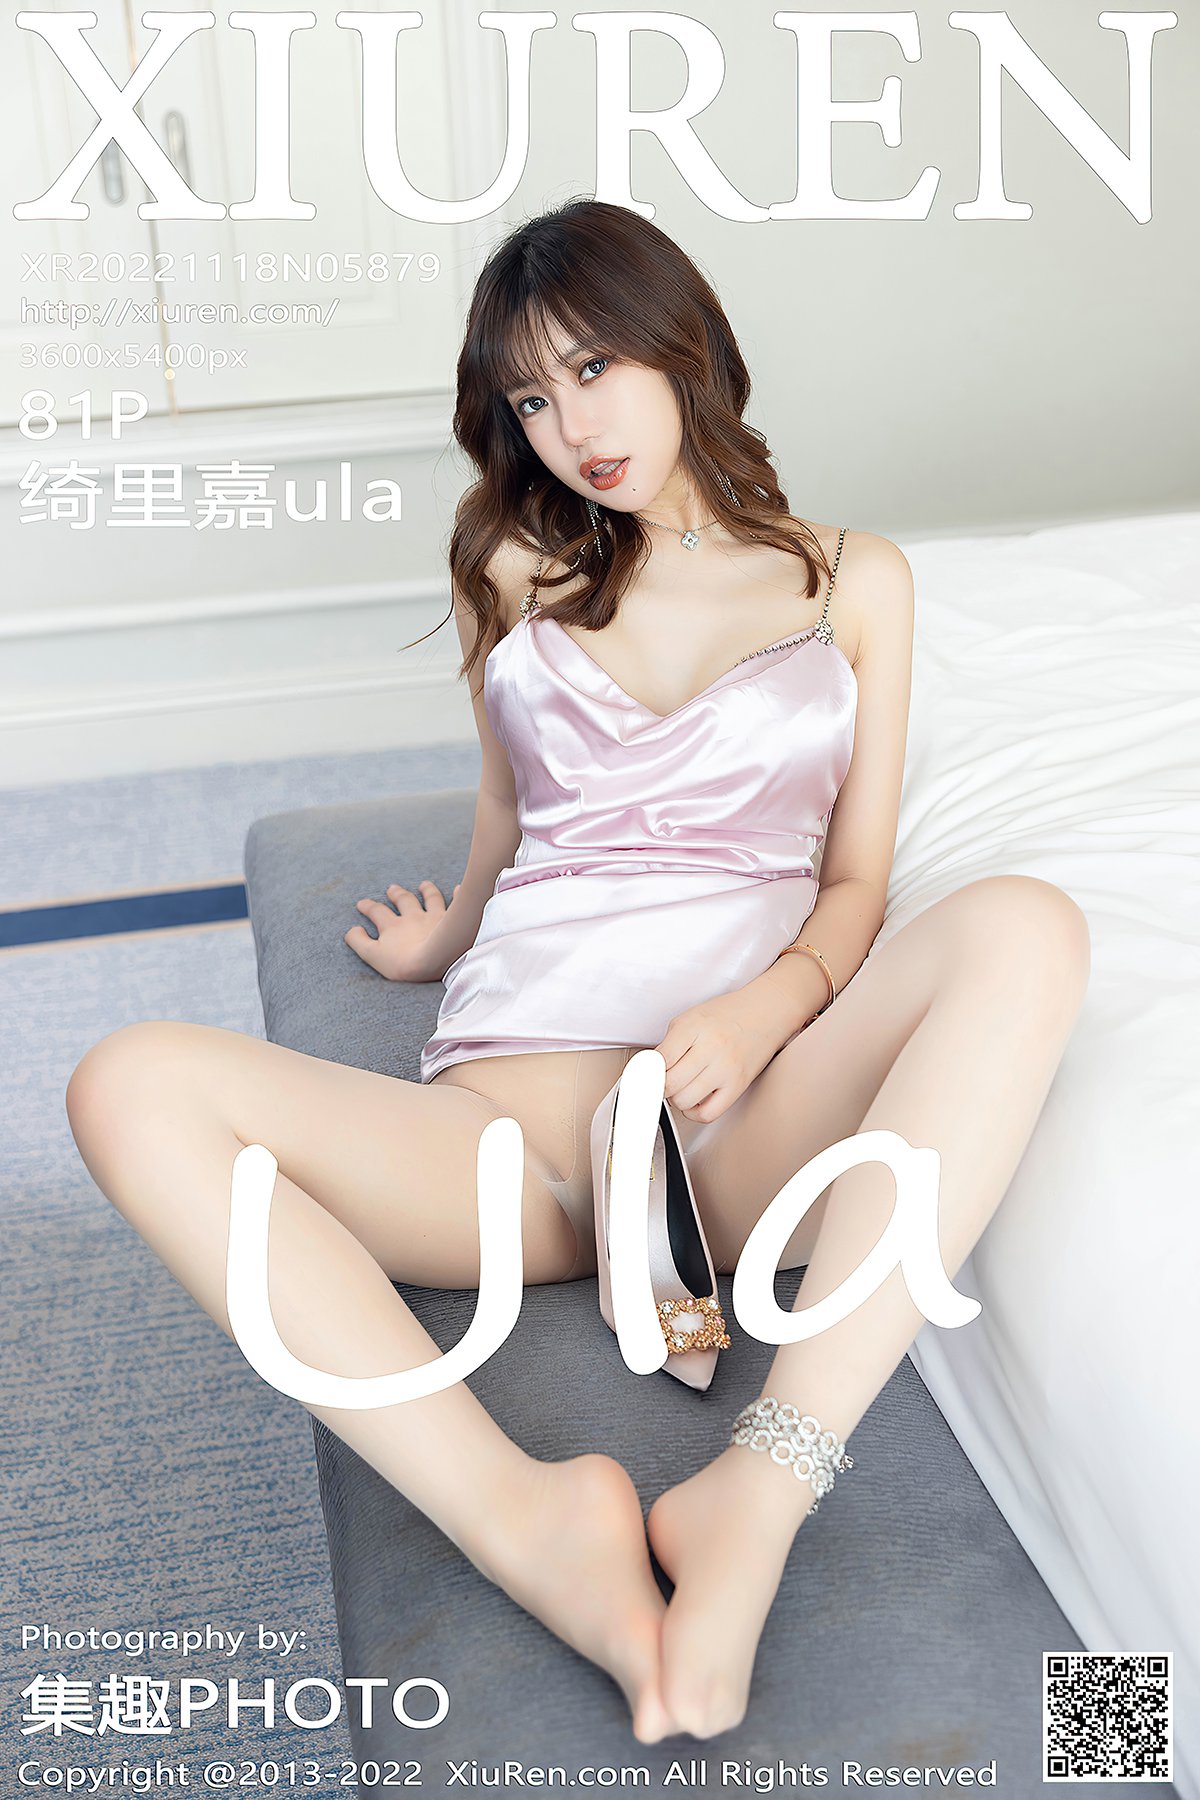 [XIUREN] No.5879 Qi Li Jia 绮里嘉ula Cover Photo